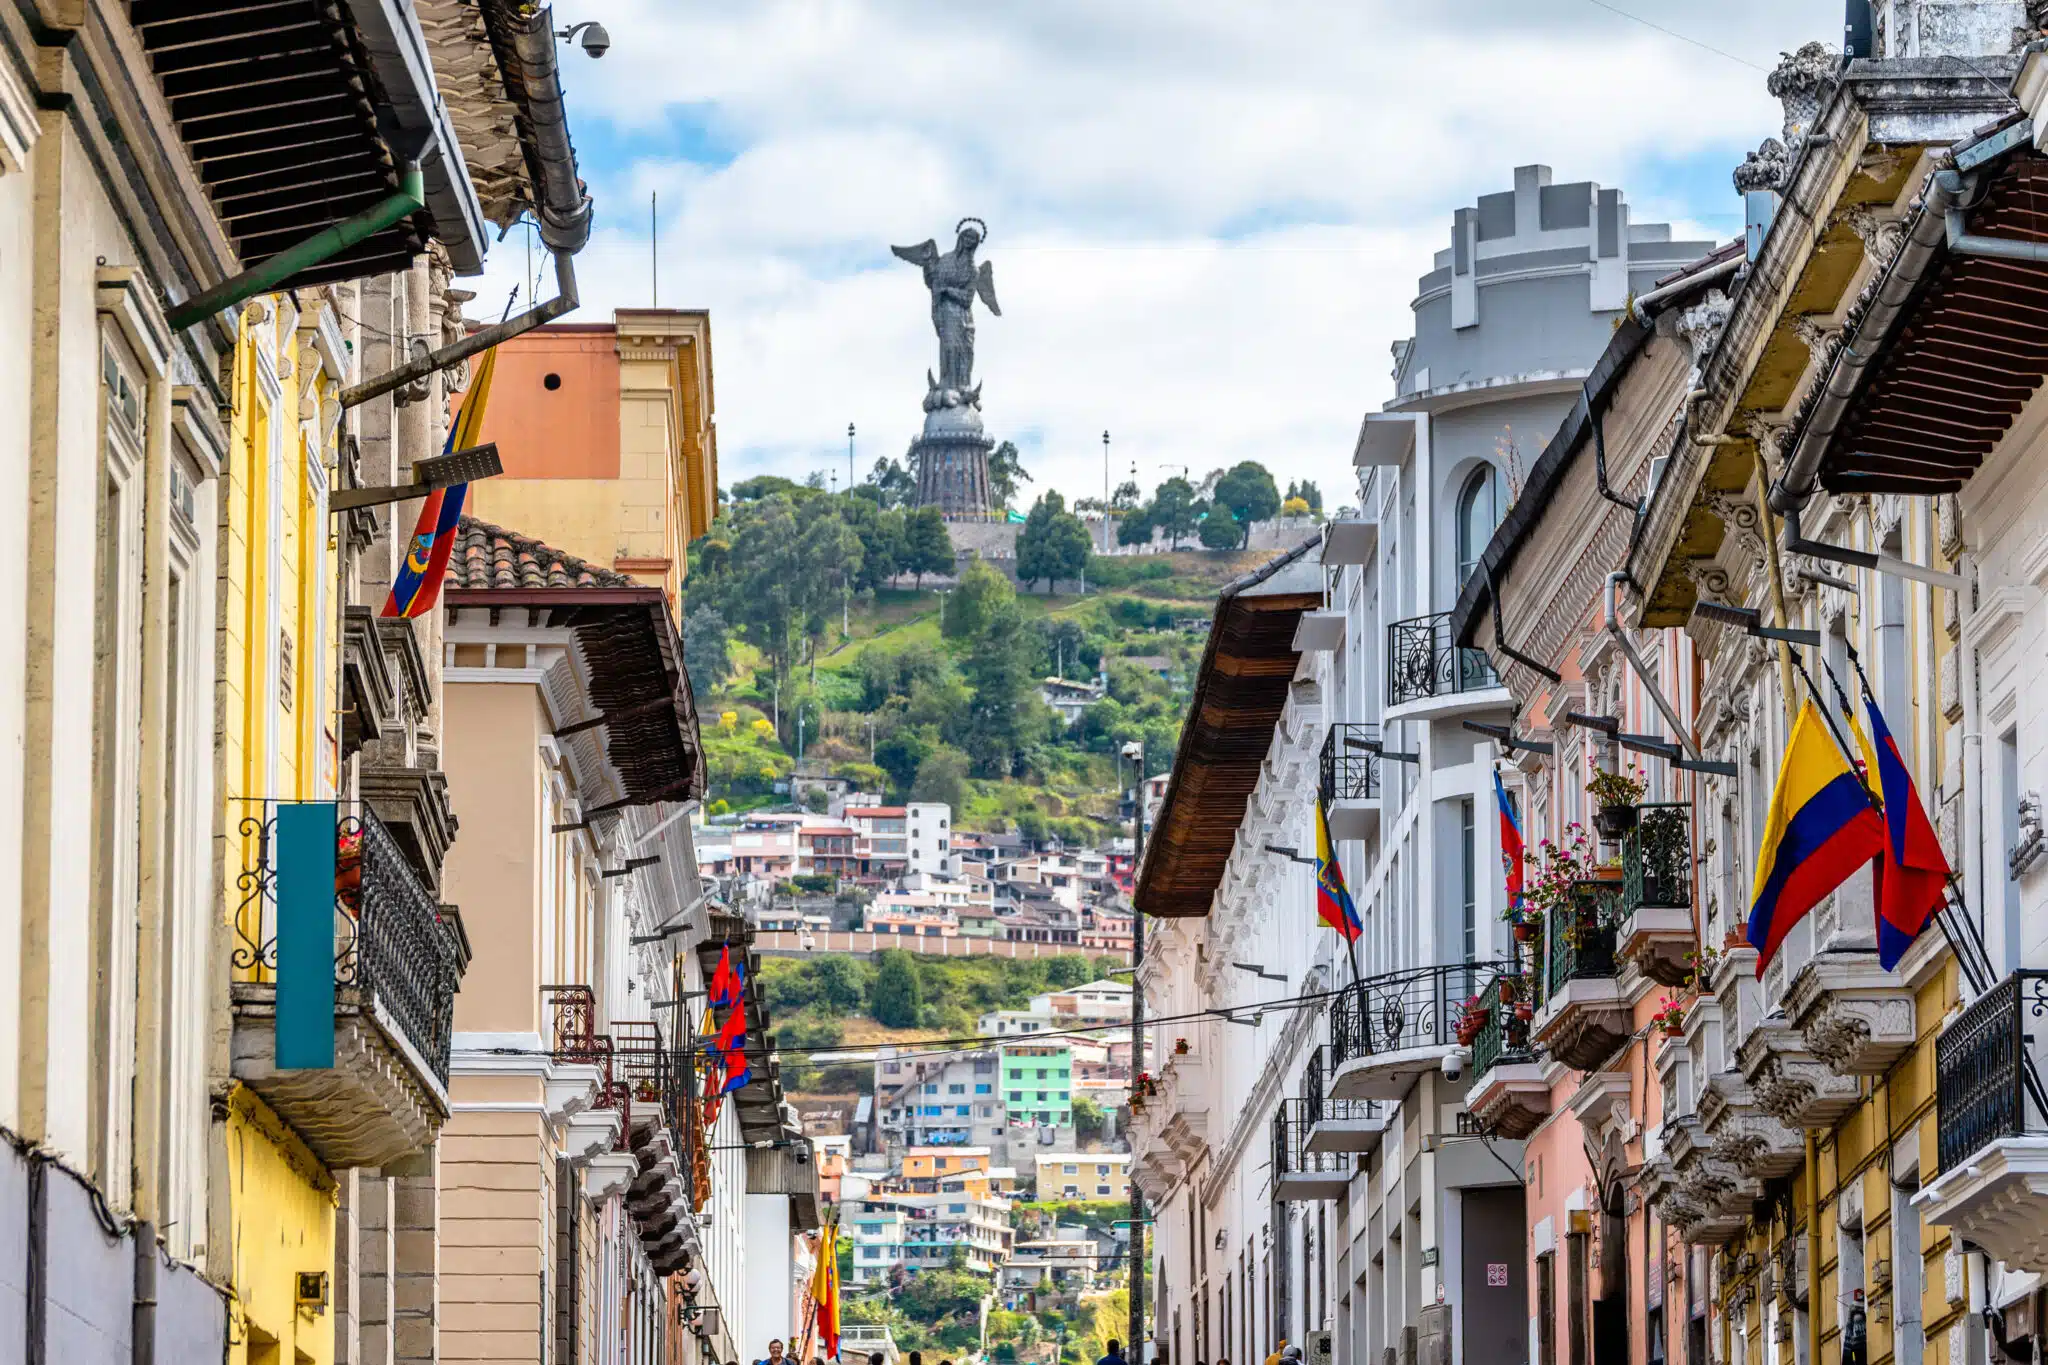 Quito Old Town, Ecuador